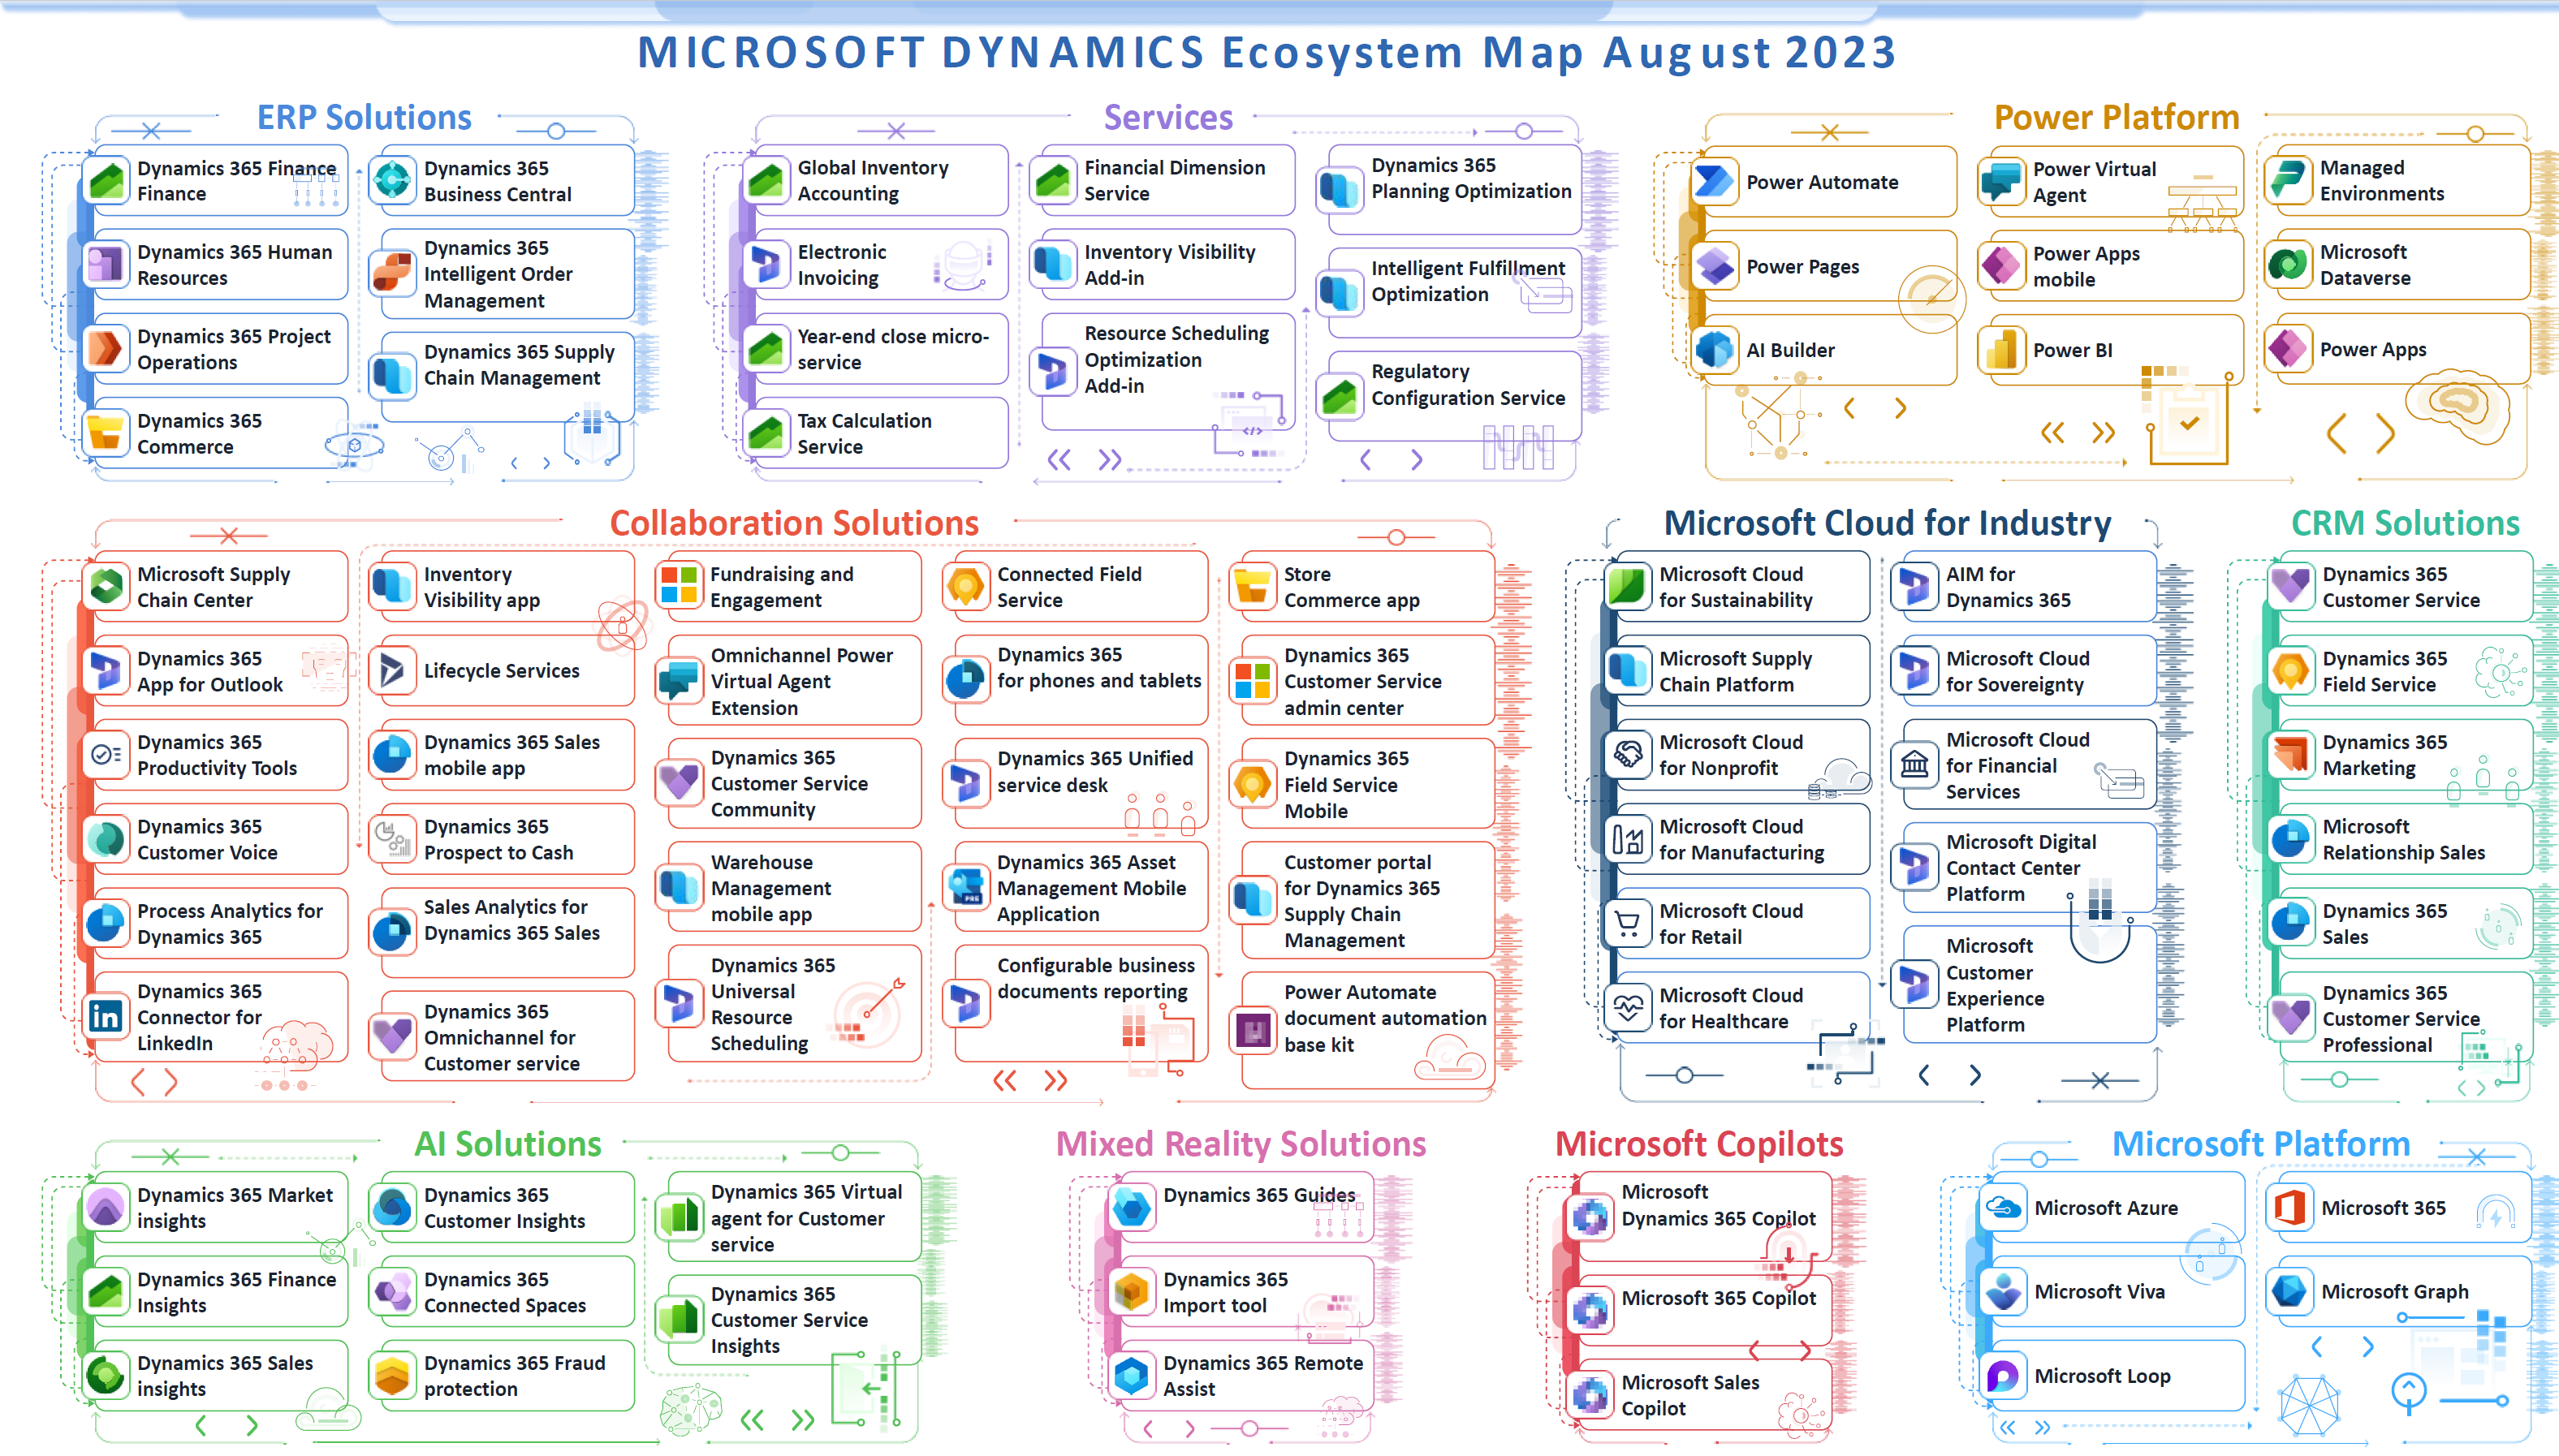 Microsoft Dynamics 365 Ecosystemmap